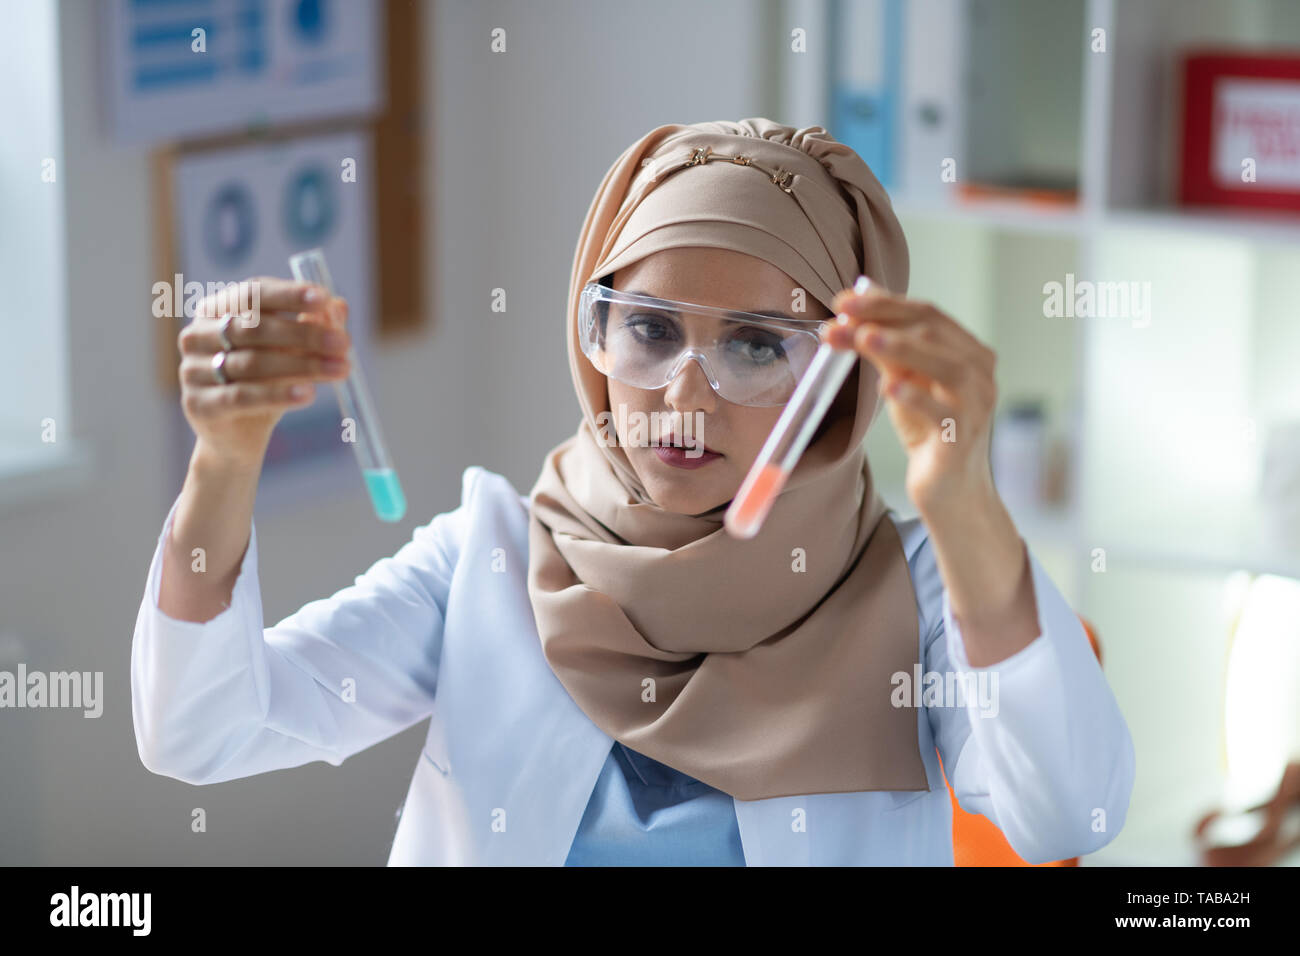 Deux tubes à essai. Le chimiste femelle portant des lunettes tenant deux tubes à essai avec des liquides Banque D'Images